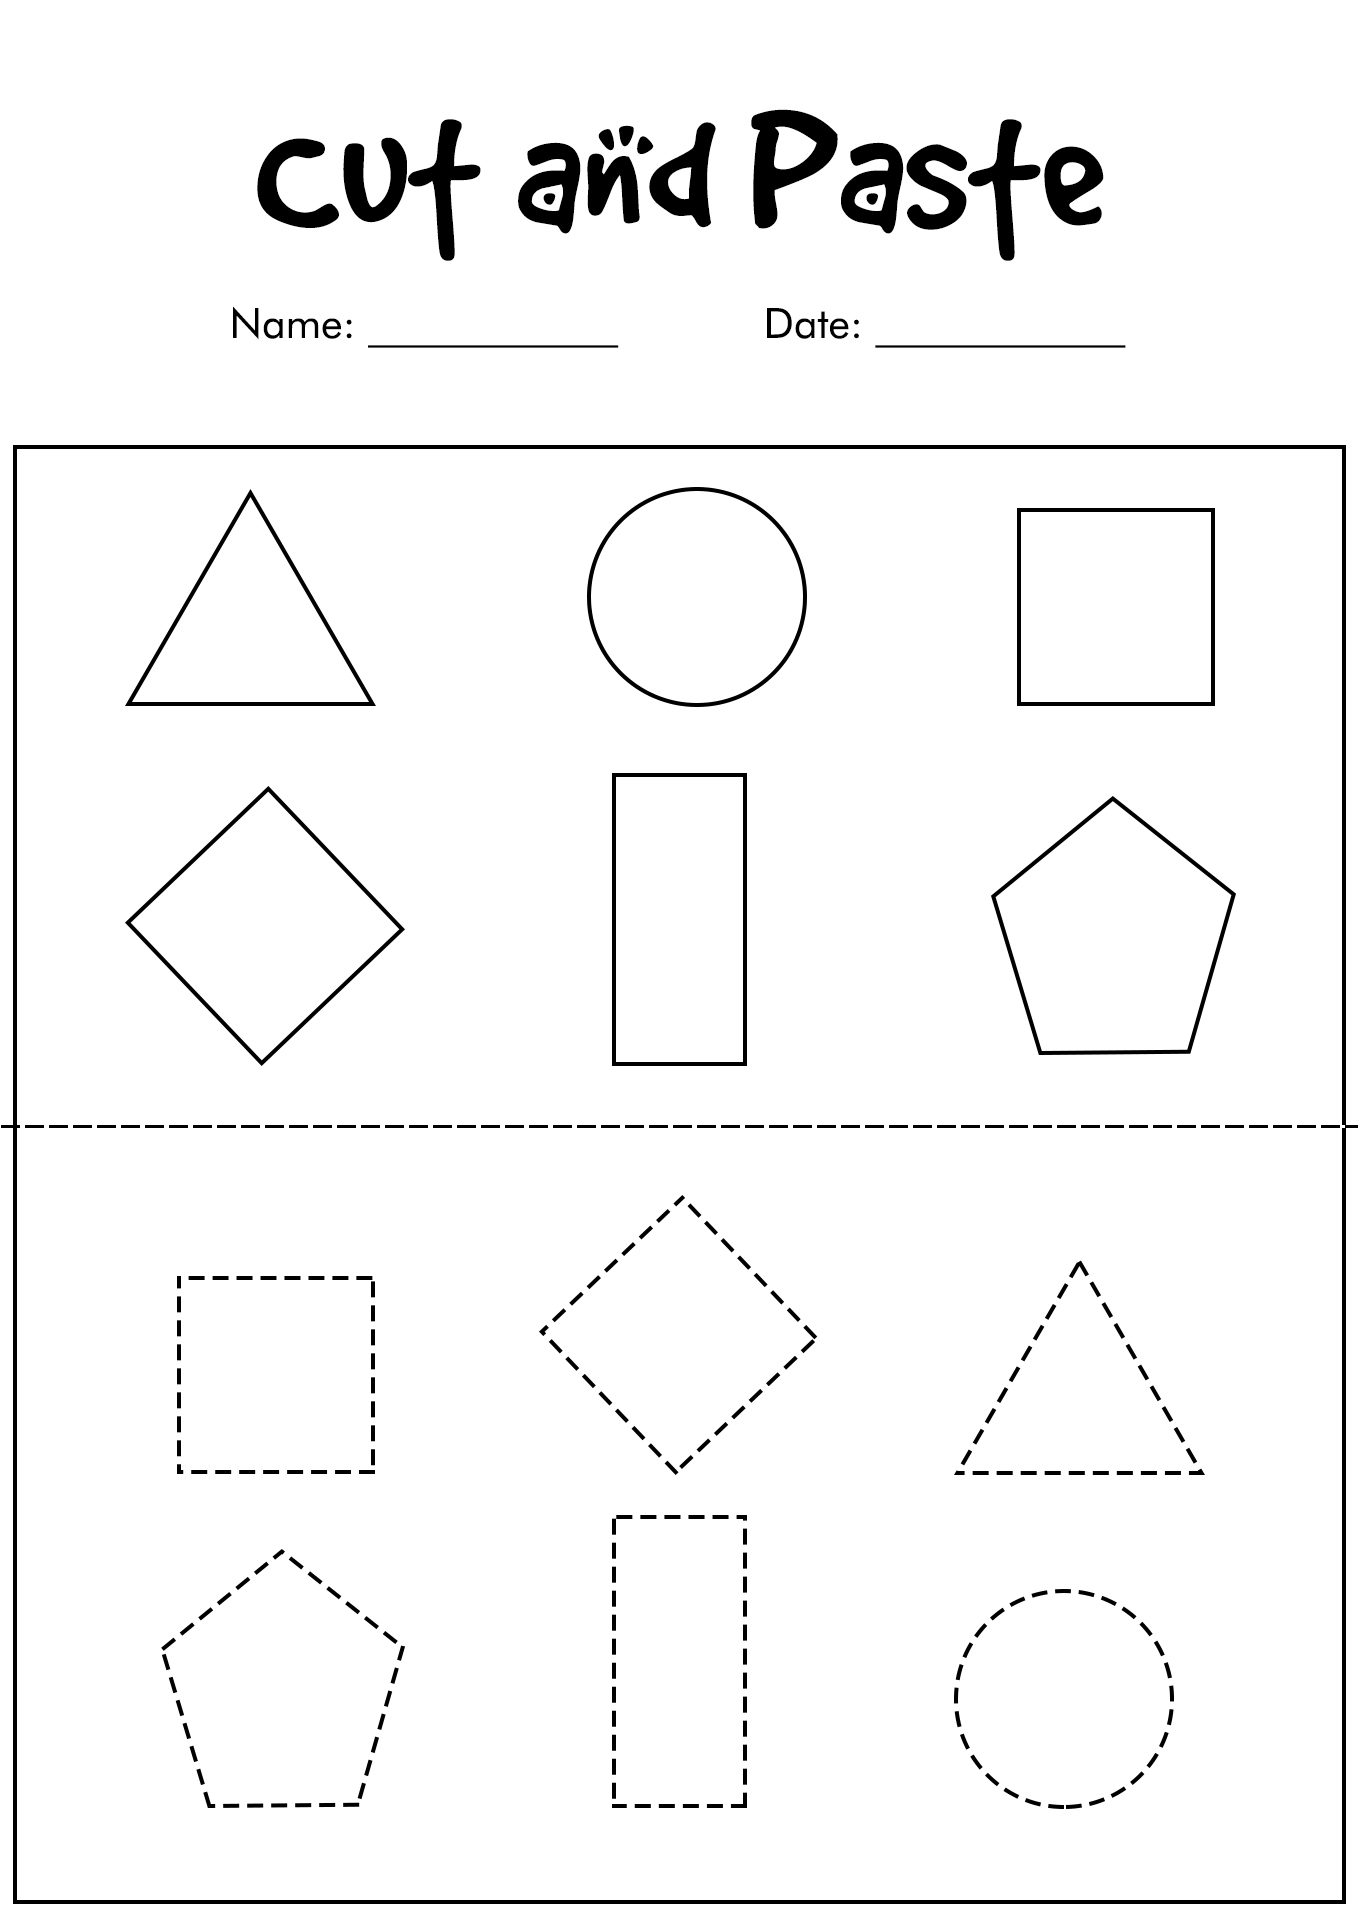 Kindergarten Cut and Paste Shapes Worksheets